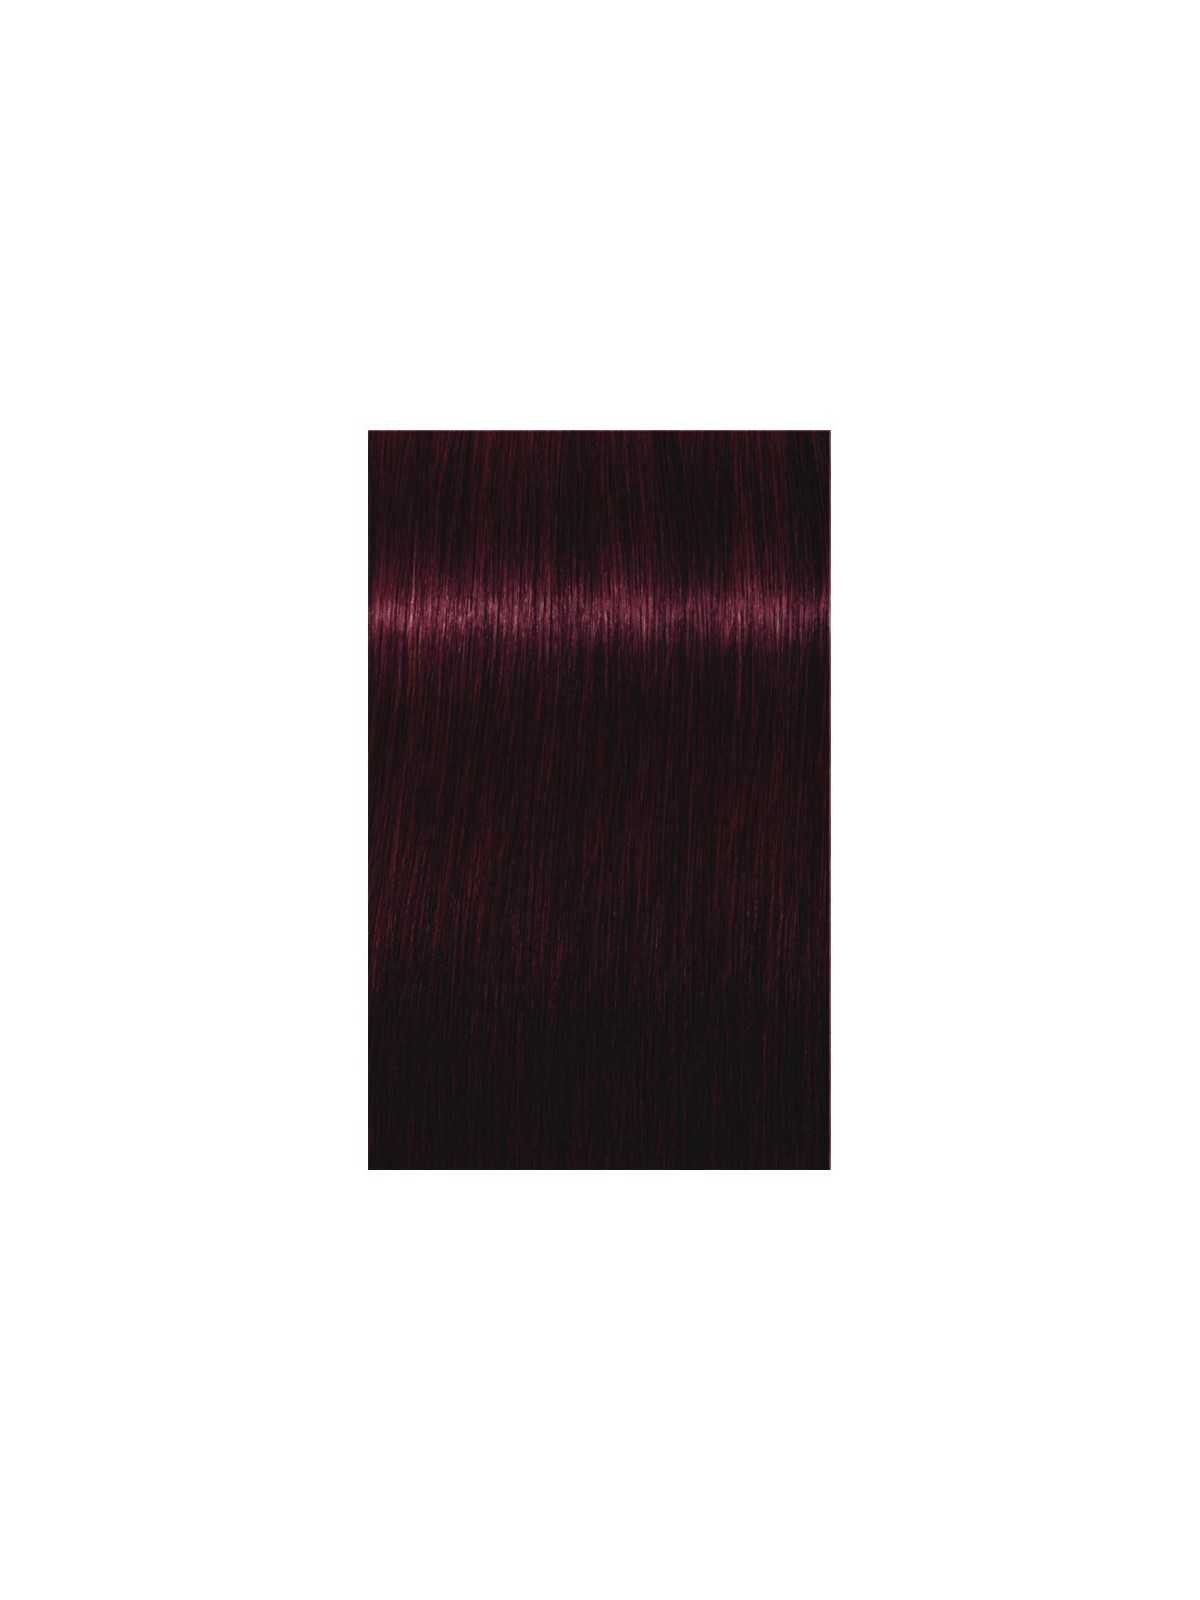 Comprar Schwarzkopf Tinte Permanente IGORA ROYAL 60ml. Nº 4-99 Castaño medio violeta intenso en Tintes con amoniaco por sólo 13,82 € o un precio específico de 8,29 € en Thalie Care